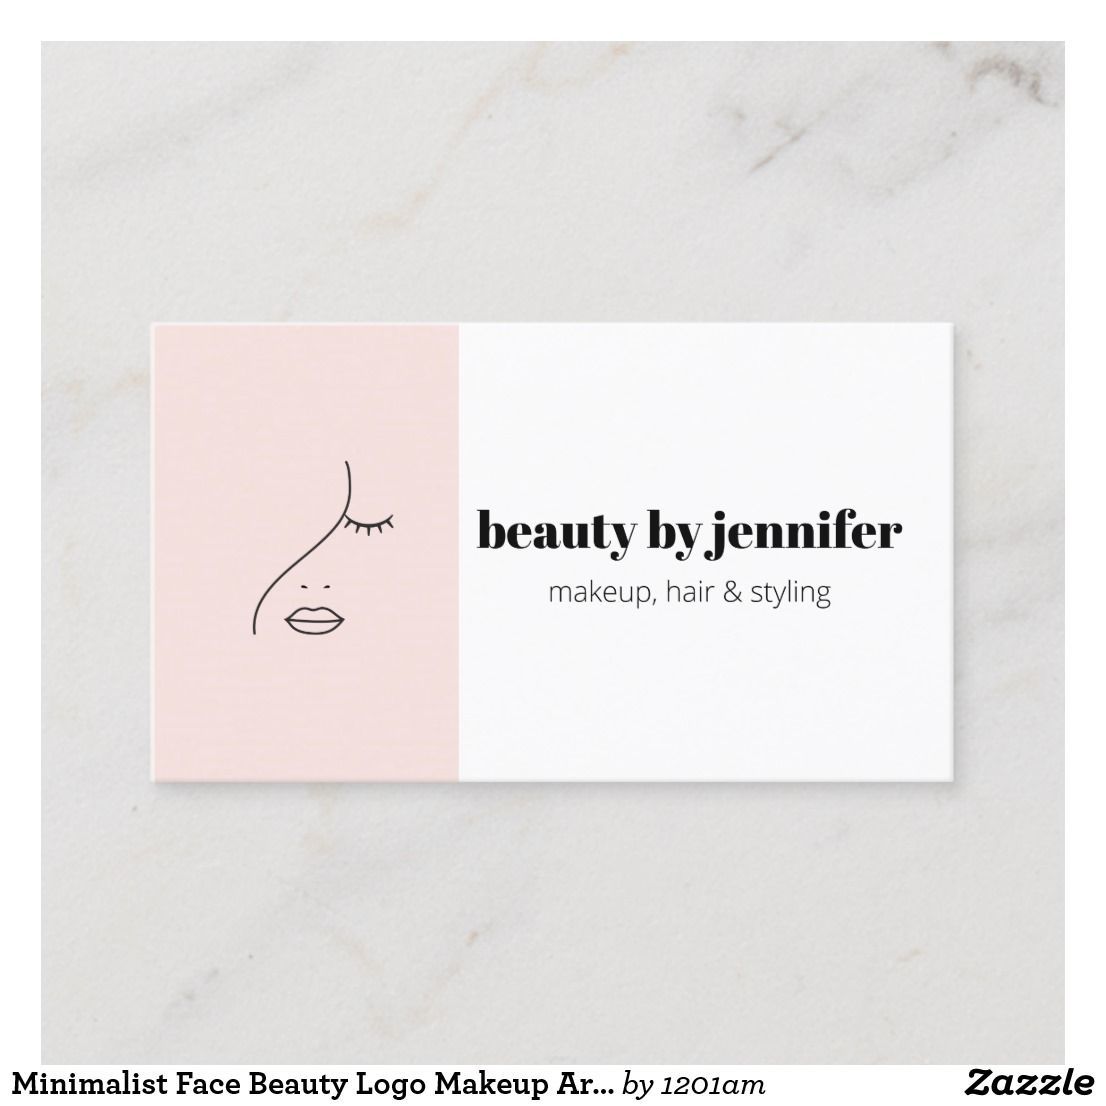 Minimalist Face Beauty Logo Makeup Artist Pink Business Card - Minimalist Face Beauty Logo Makeup Artist Pink Business Card -   17 beauty Logo shop ideas